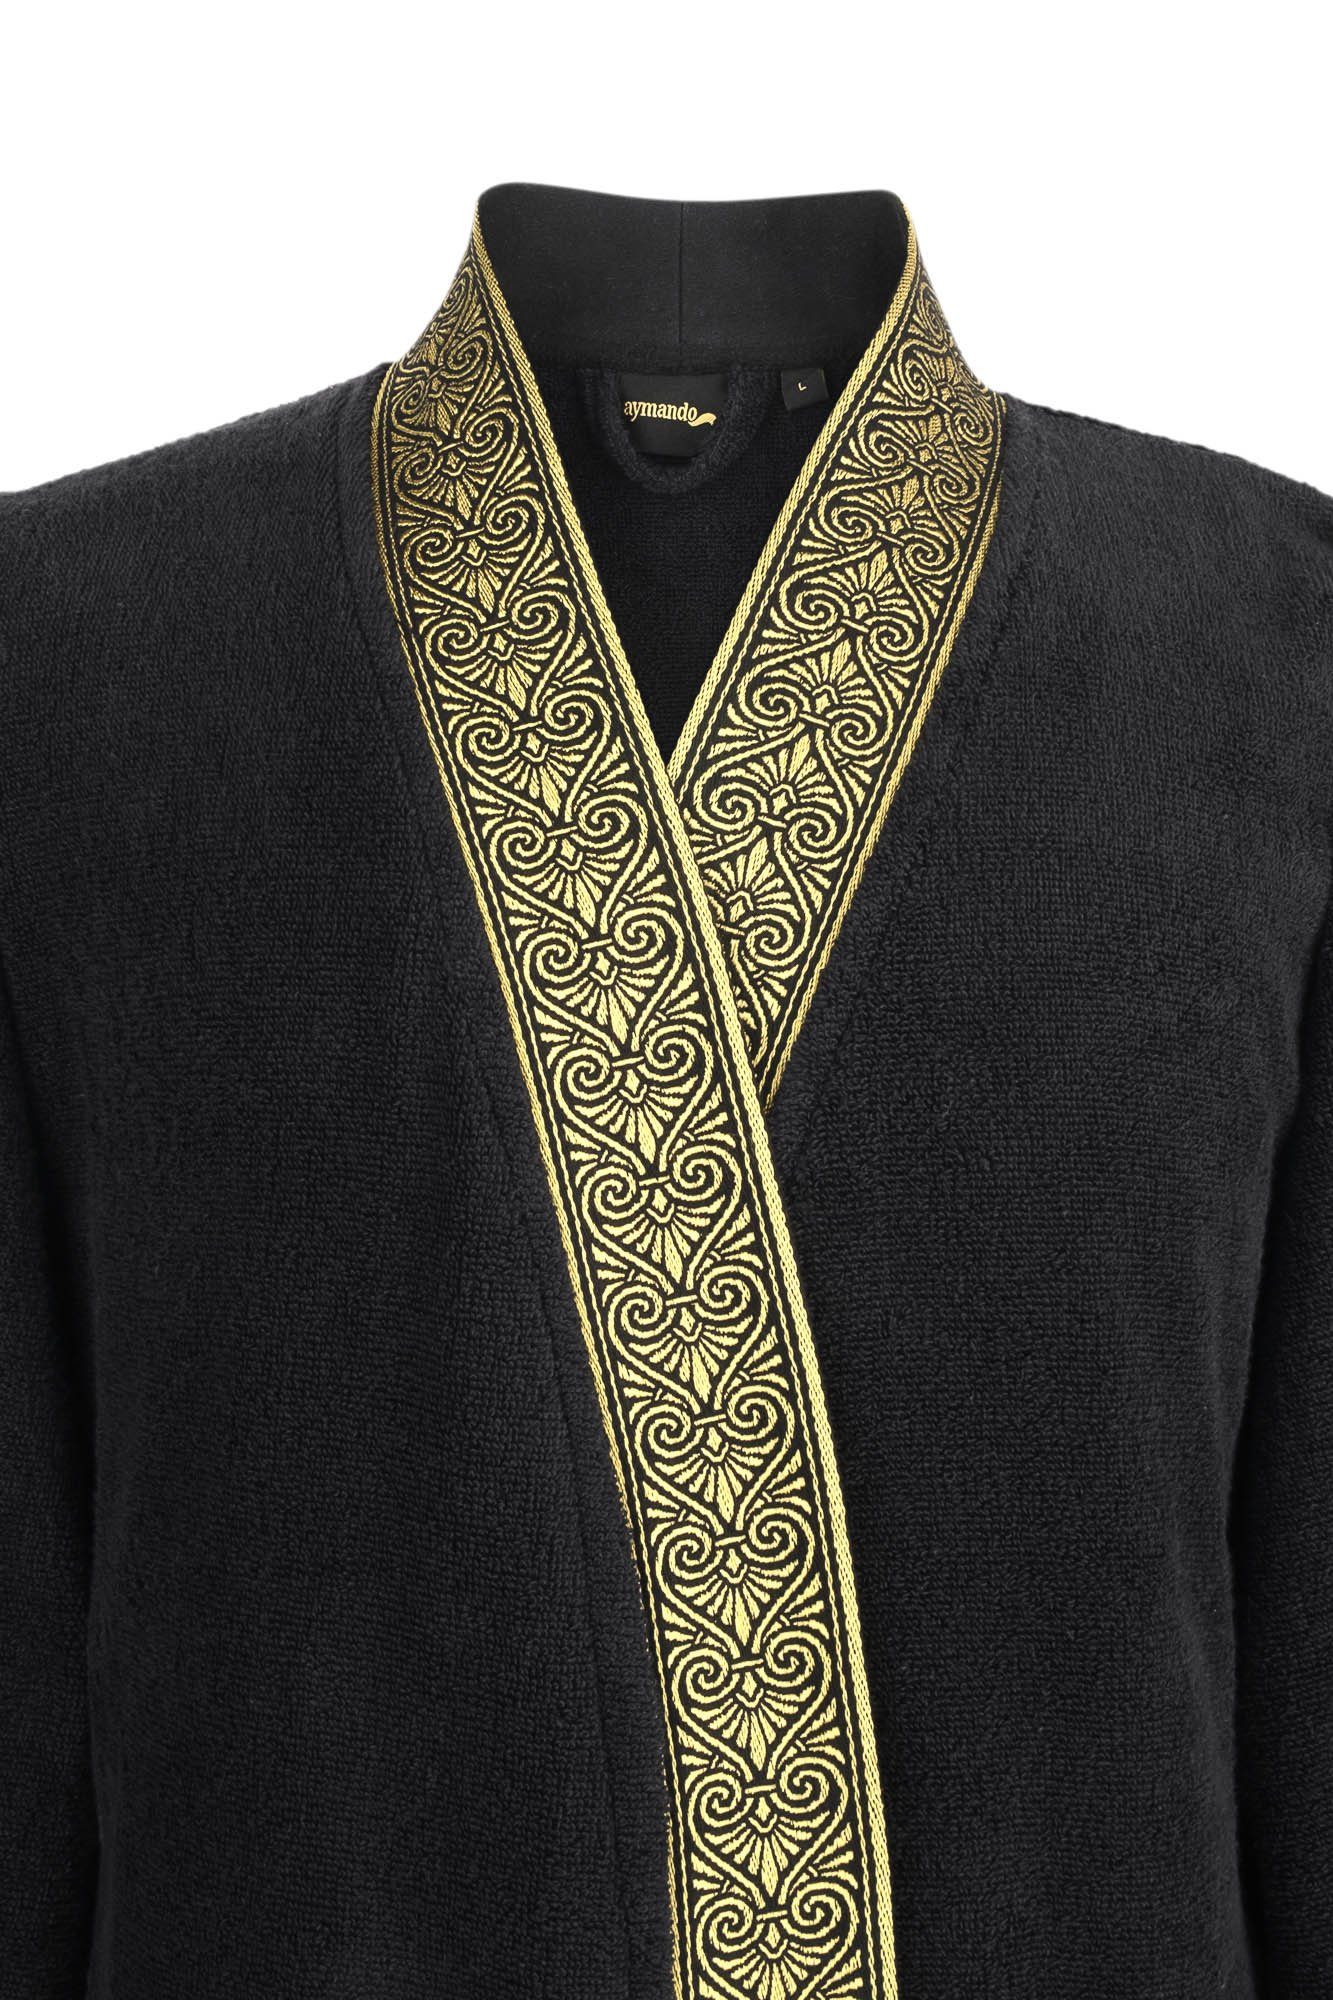 Aymando Bademantel Schwarz, 100% Baumwolle, Ornament Optik, gestickte Gold Bindegürtel, Blende Kimono-Kragen, Geschenkverpackung mit